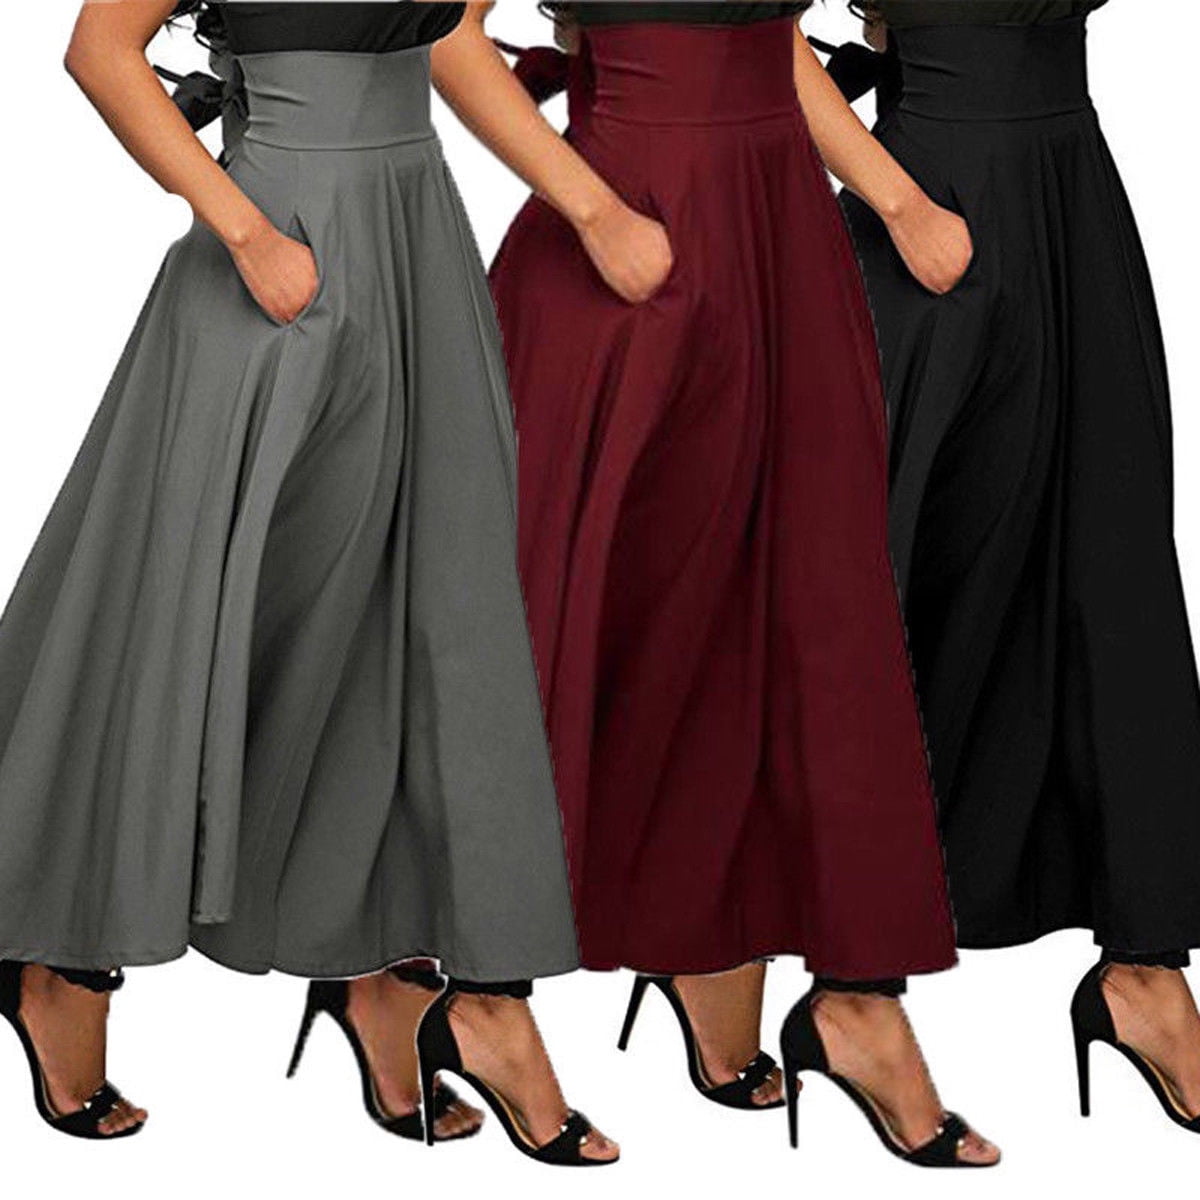 Bagilaanoe High Waist Pleated Long Skirts Women Flared Full Maxi Skirt Swing Dress 9253